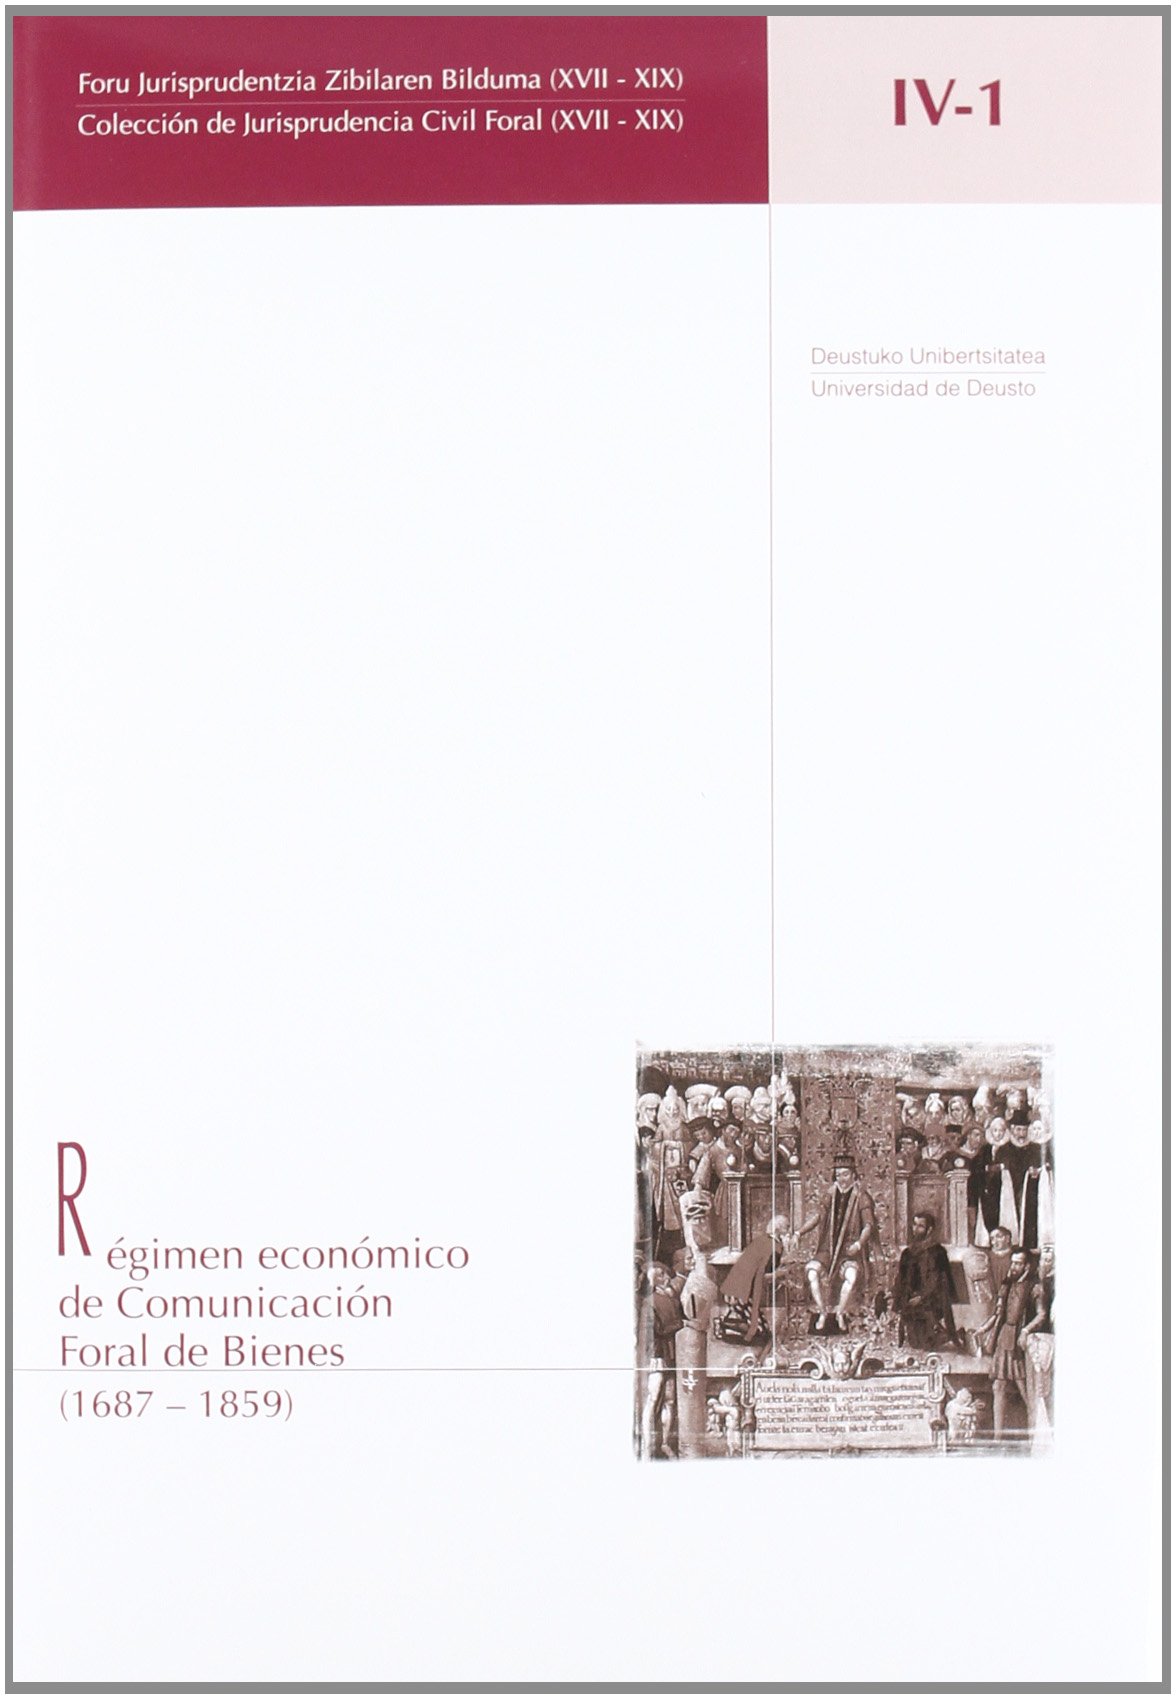 Imagen de portada del libro Régimen económico de comunicación foral de bienes (1687-1859)